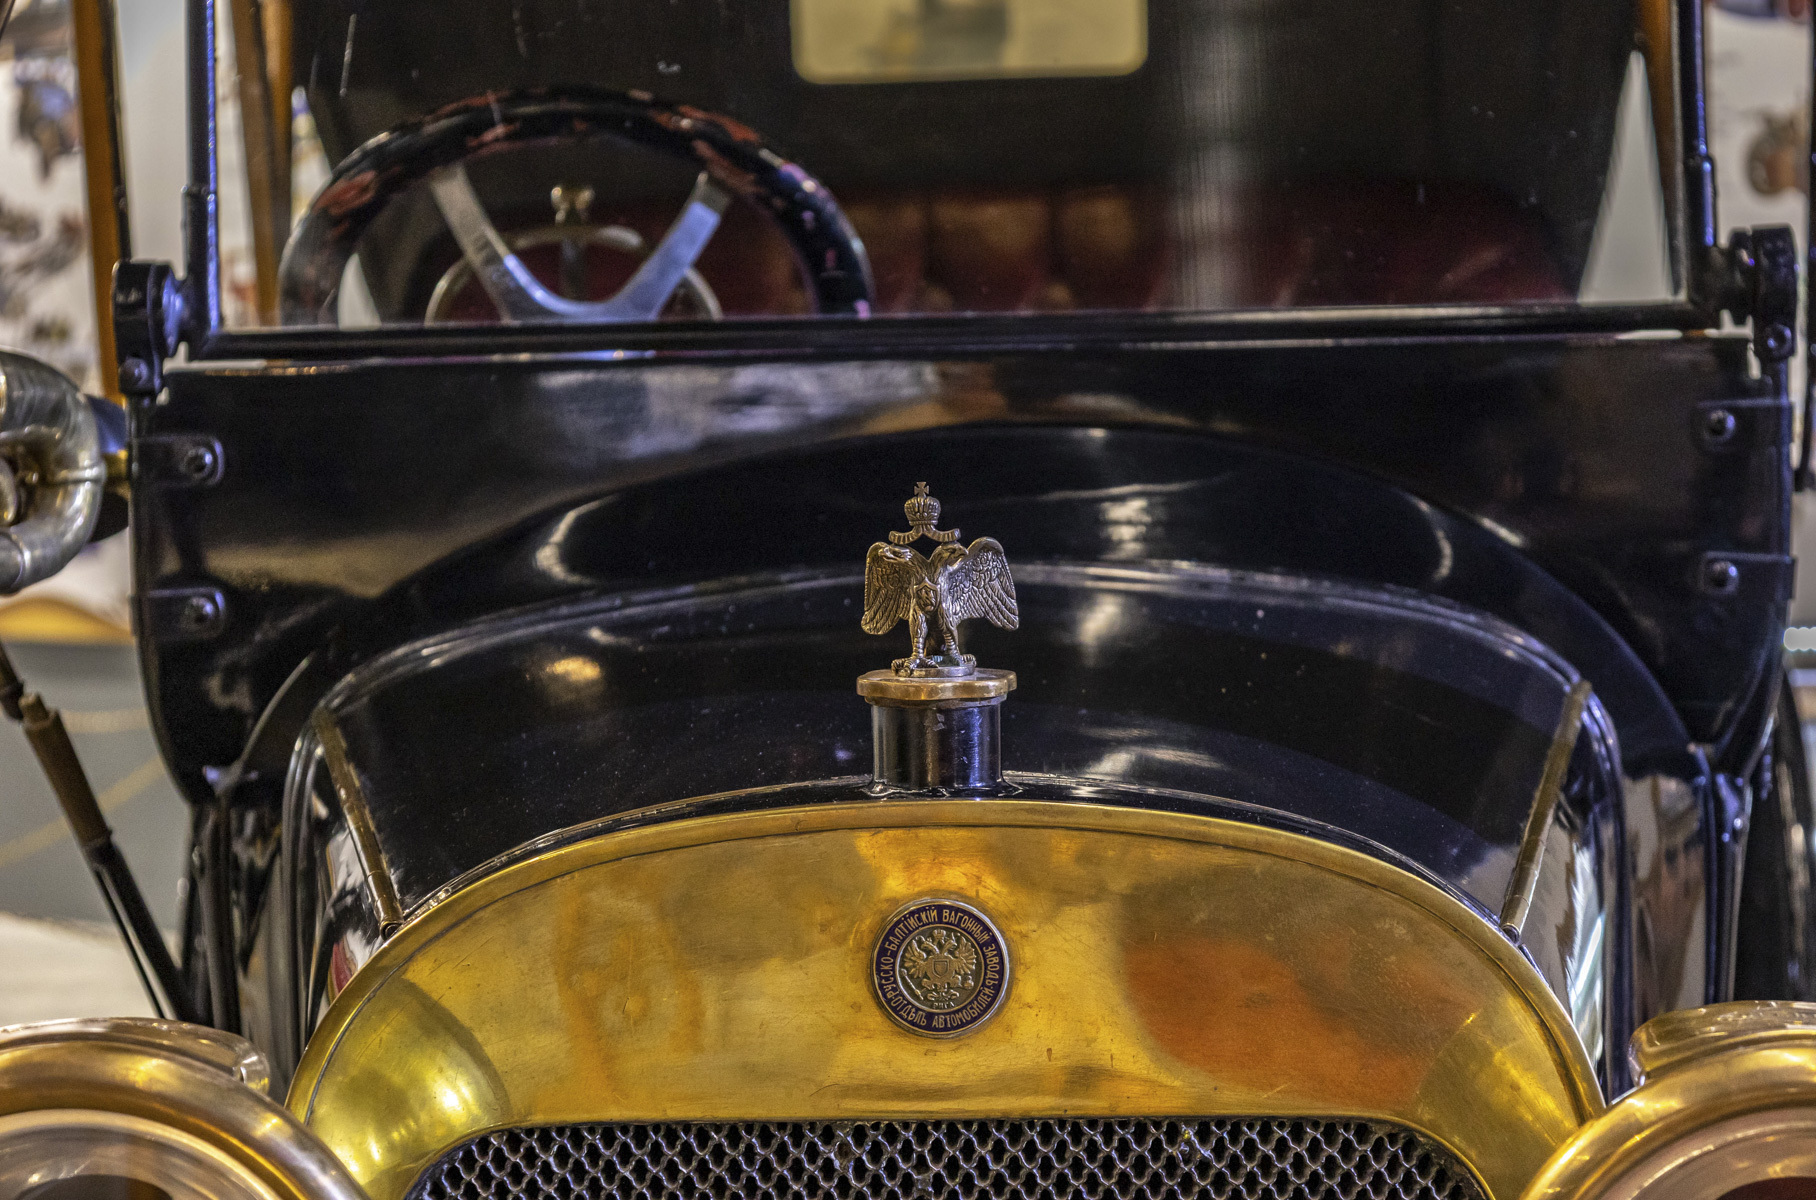 РБВЗ был основан в 1869 году, а автомобильный отдел начал свою работу в 1909 году, когда был собран первый «Руссо-Балт».